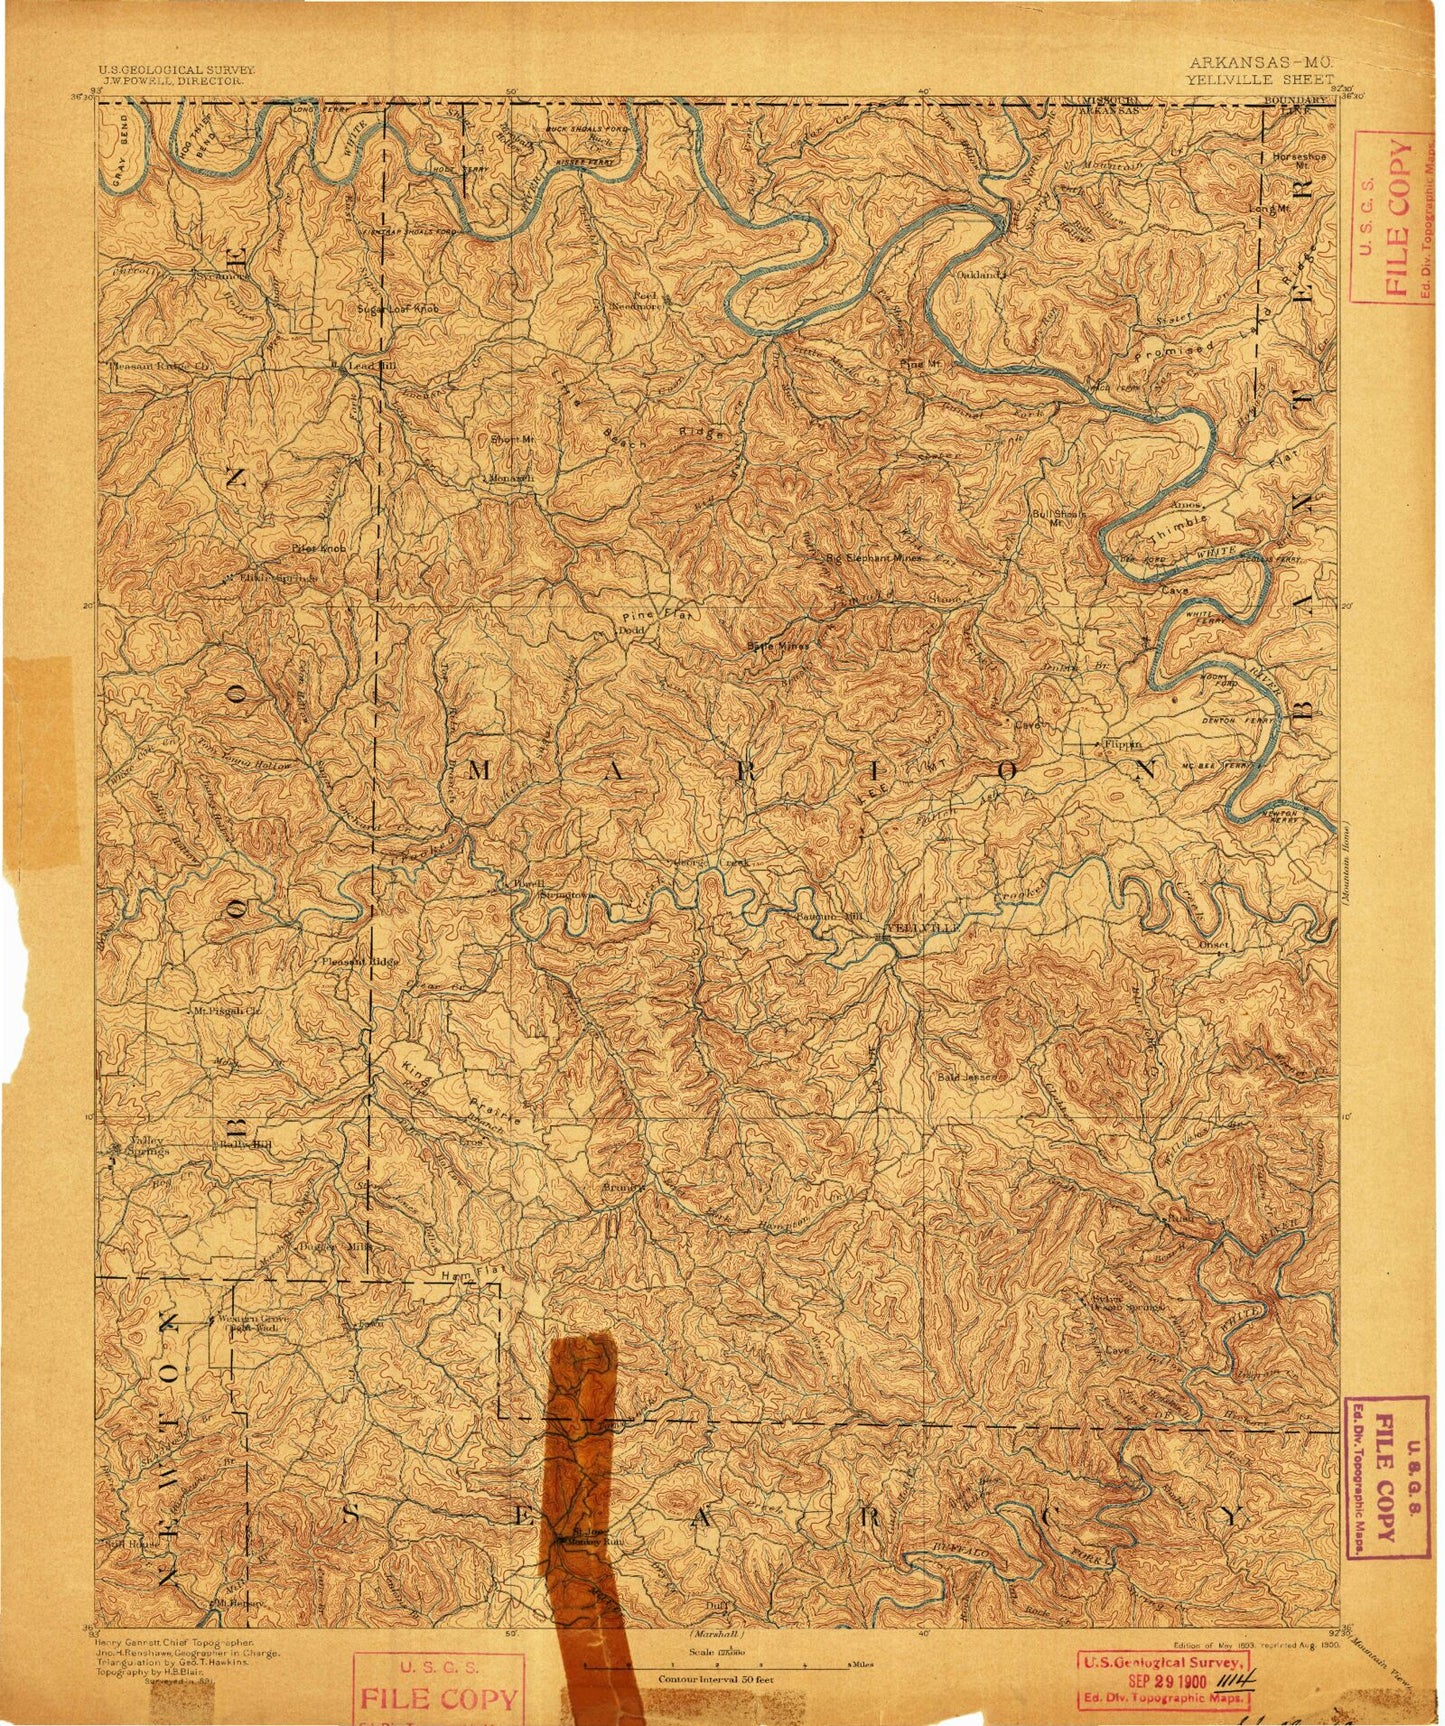 Historic 1893 Yellville Arkansas 30'x30' Topo Map Image